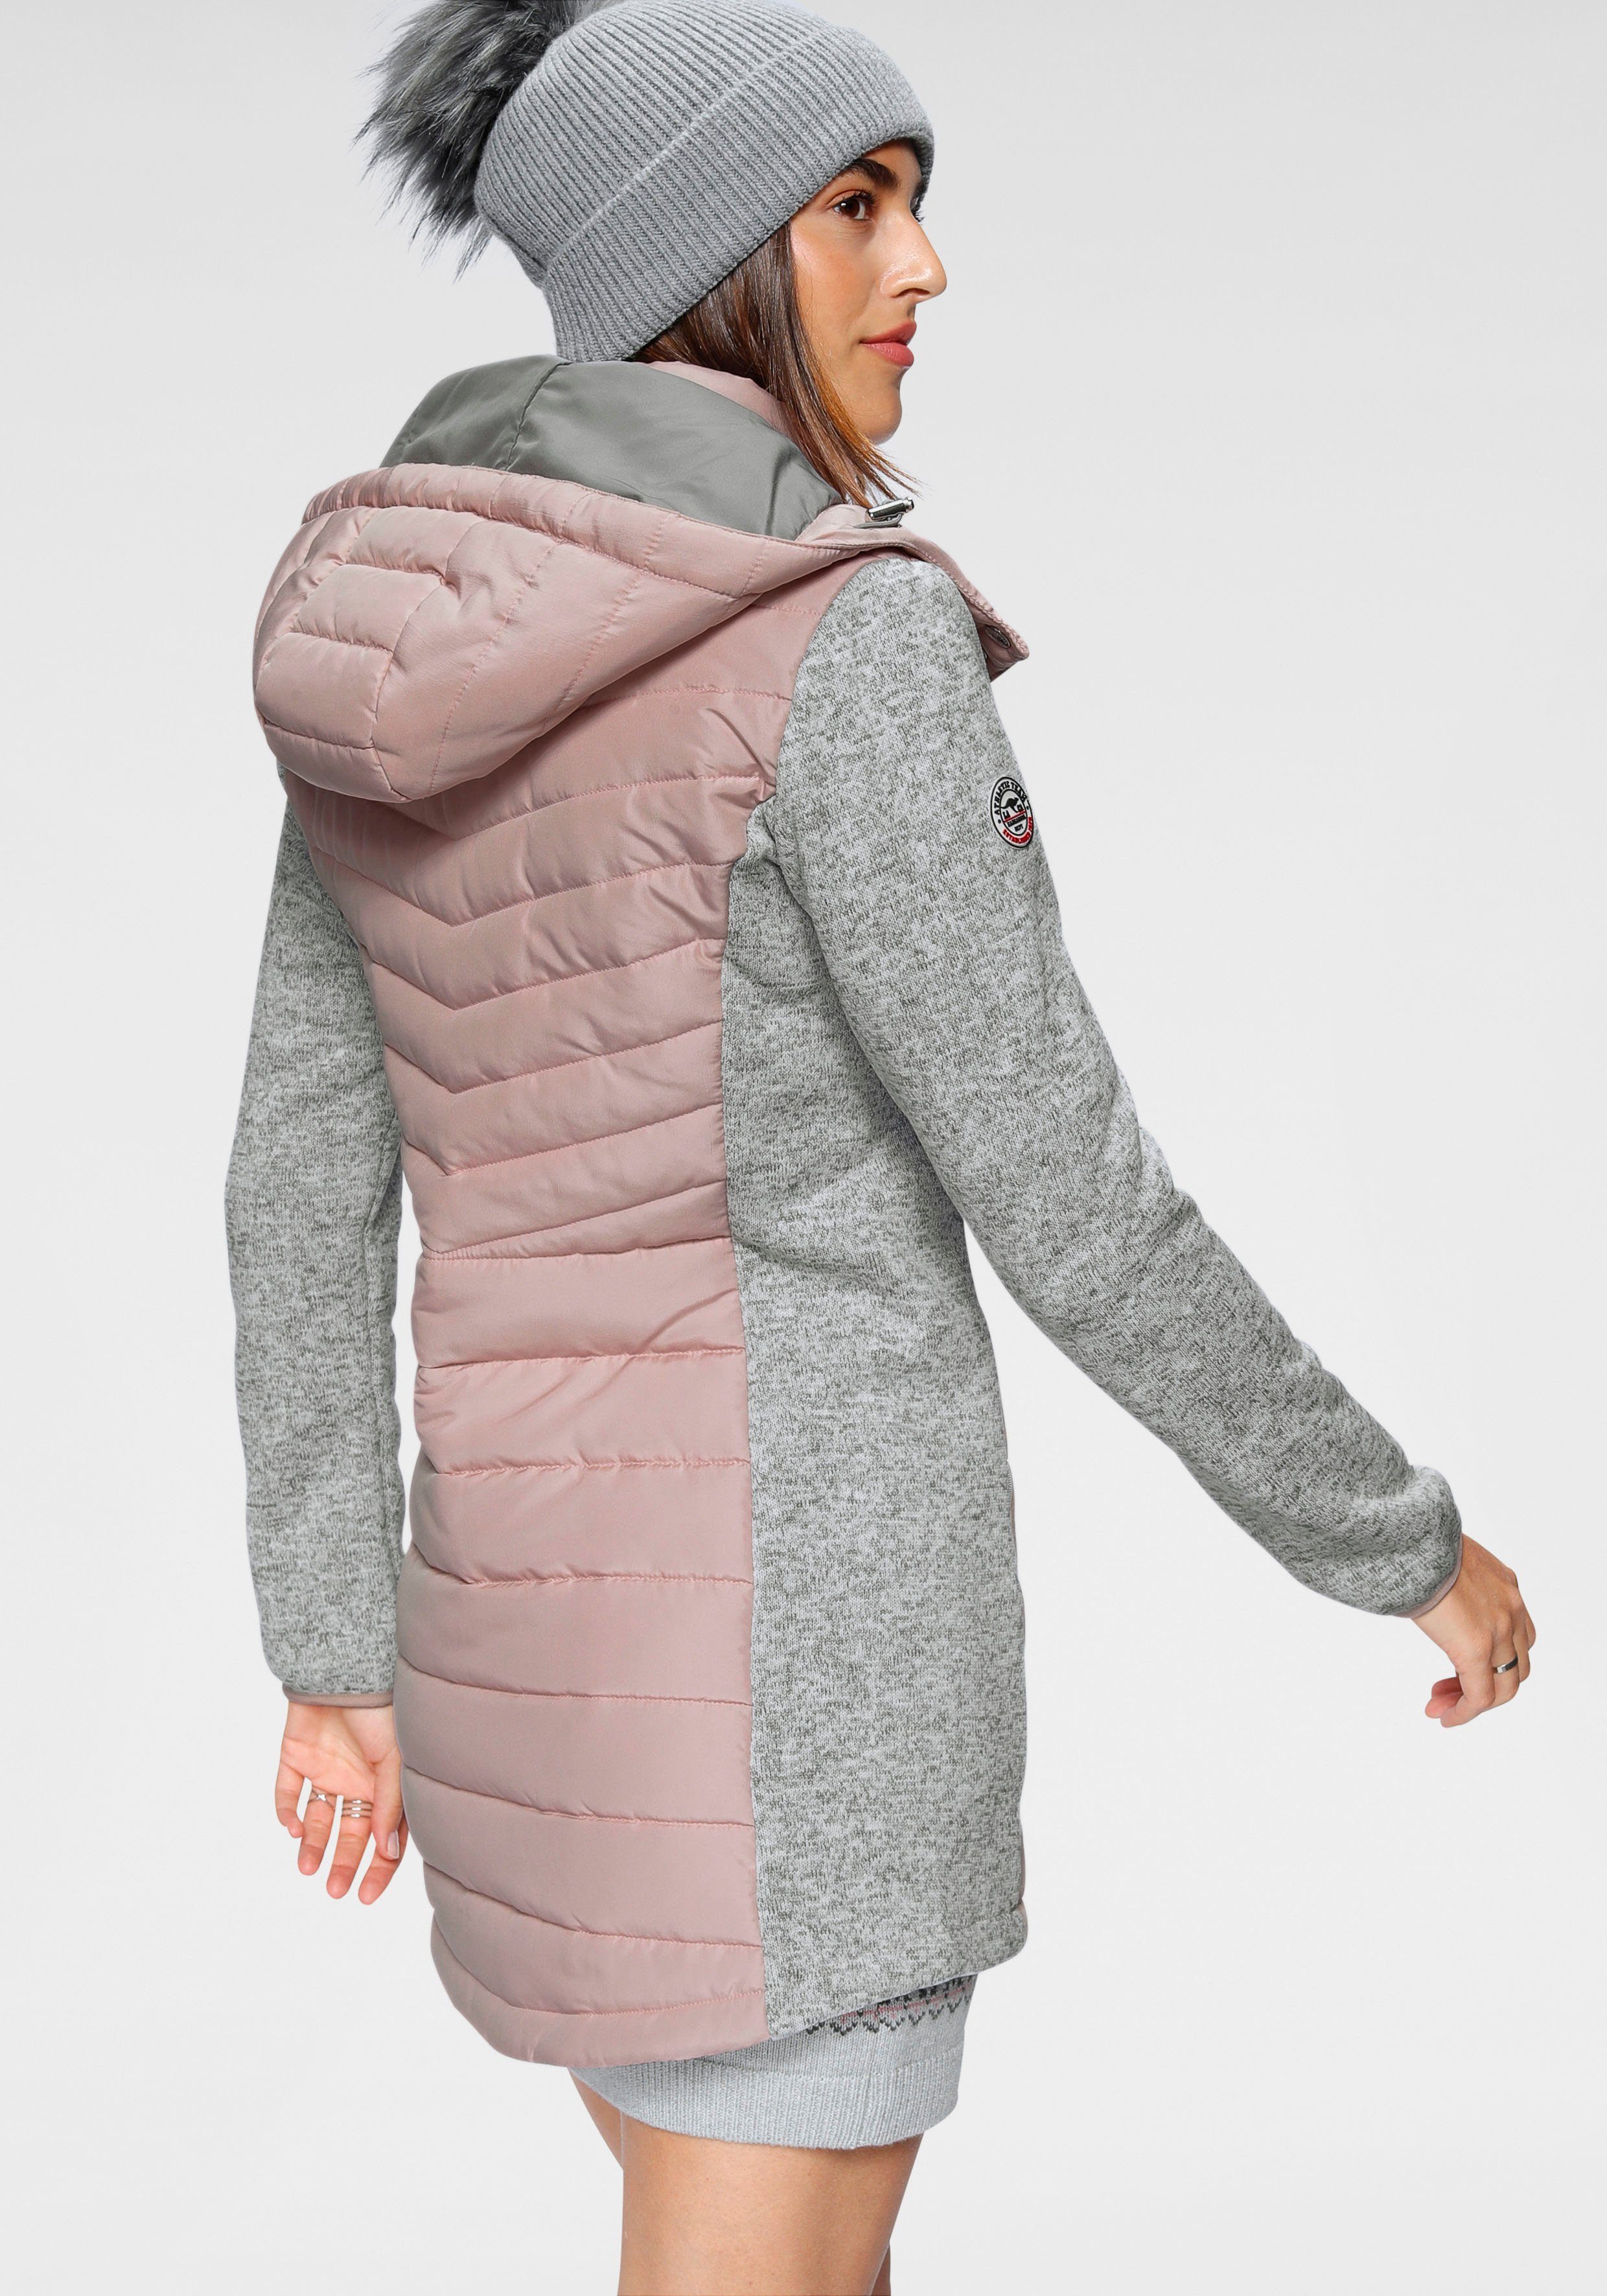 KangaROOS 2-In-1 nachhaltigem Langjacke Material) im grau-rosa trendigen (Jacke aus Look